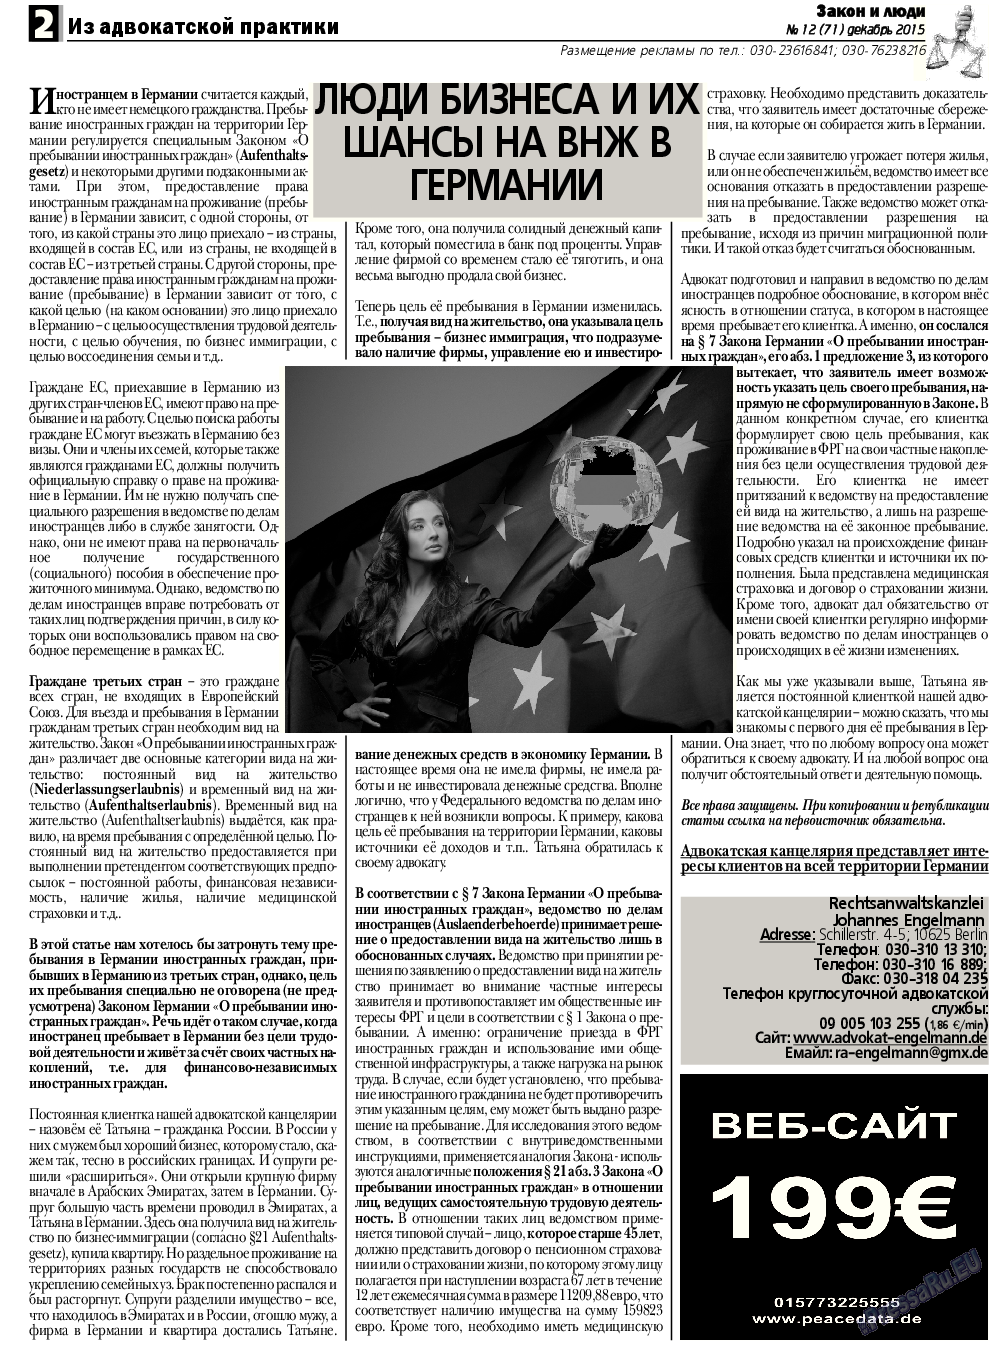 Закон и люди, газета. 2015 №12 стр.2